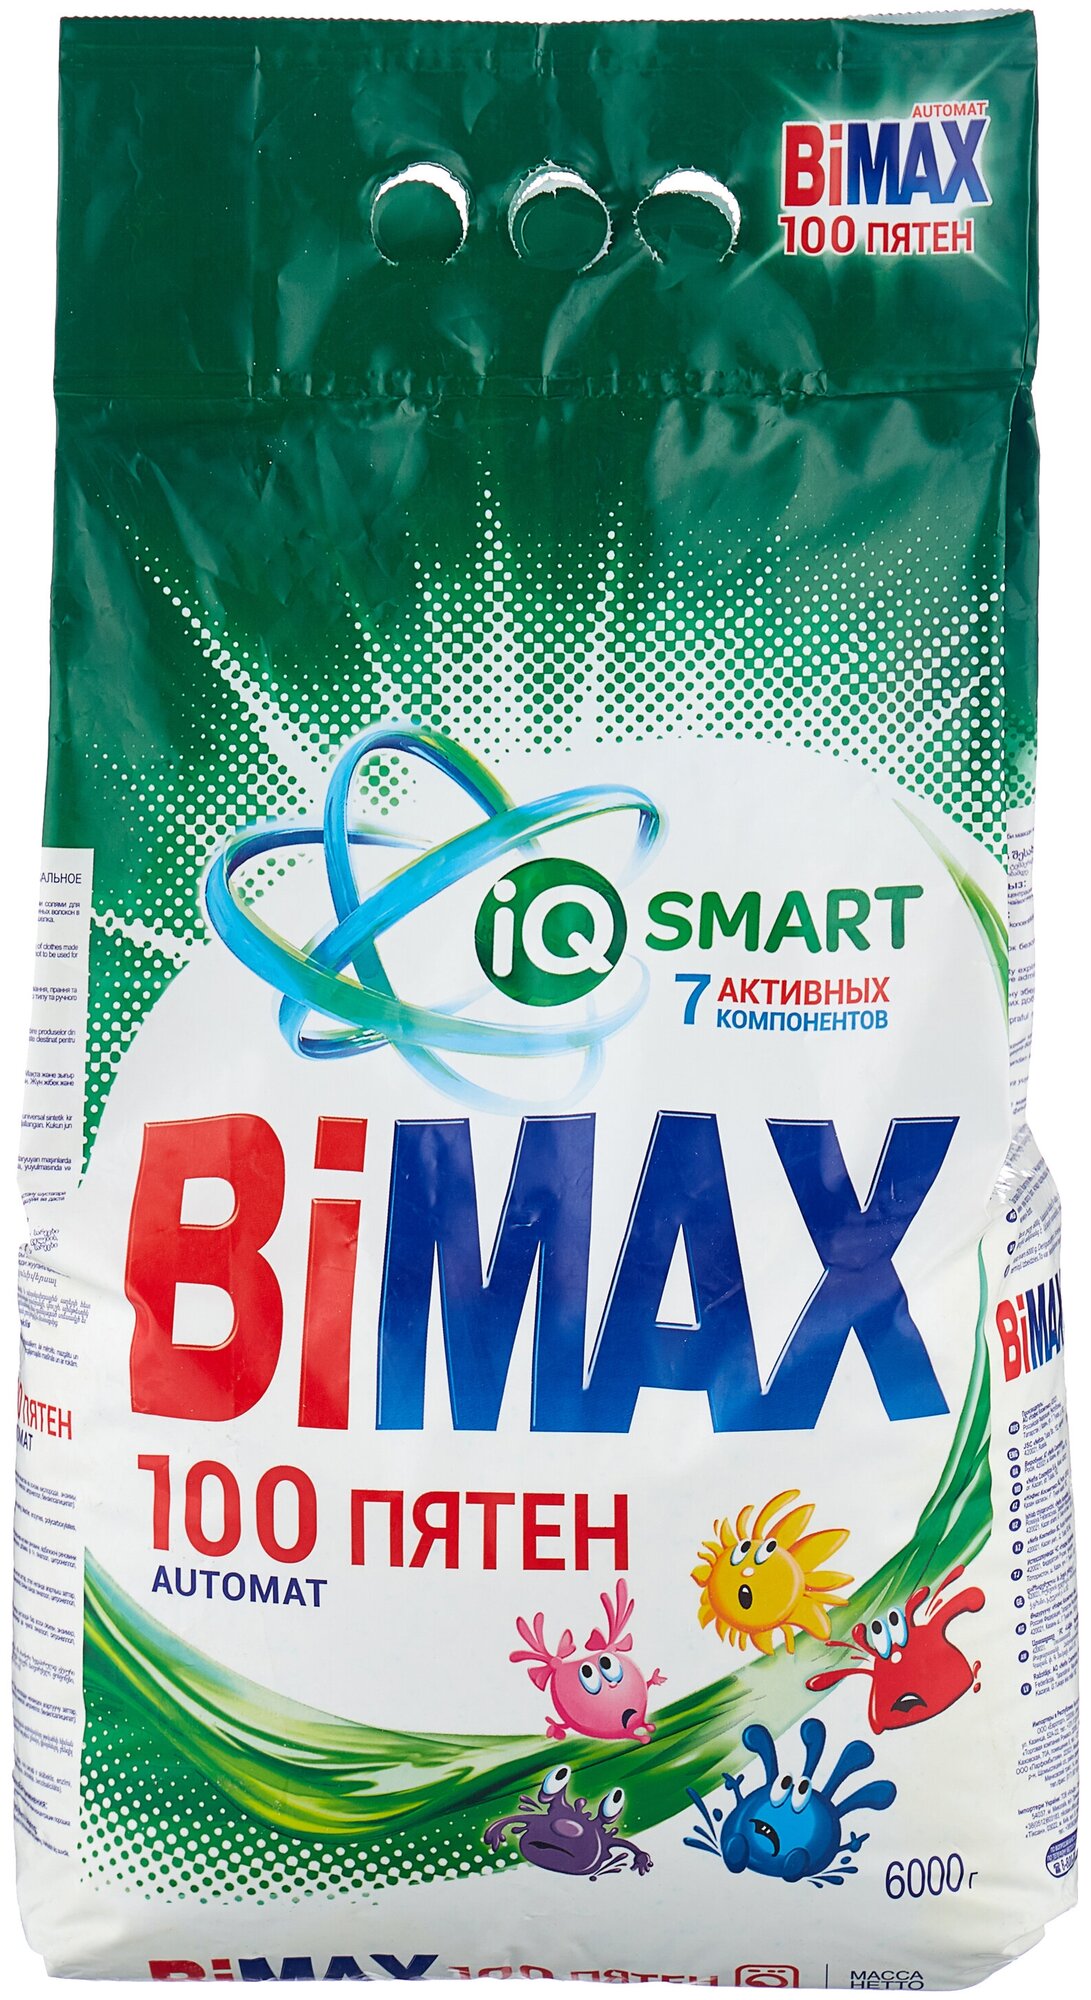 Стиральный порошок Bimax 100 пятен, автомат —  по выгодной цене .